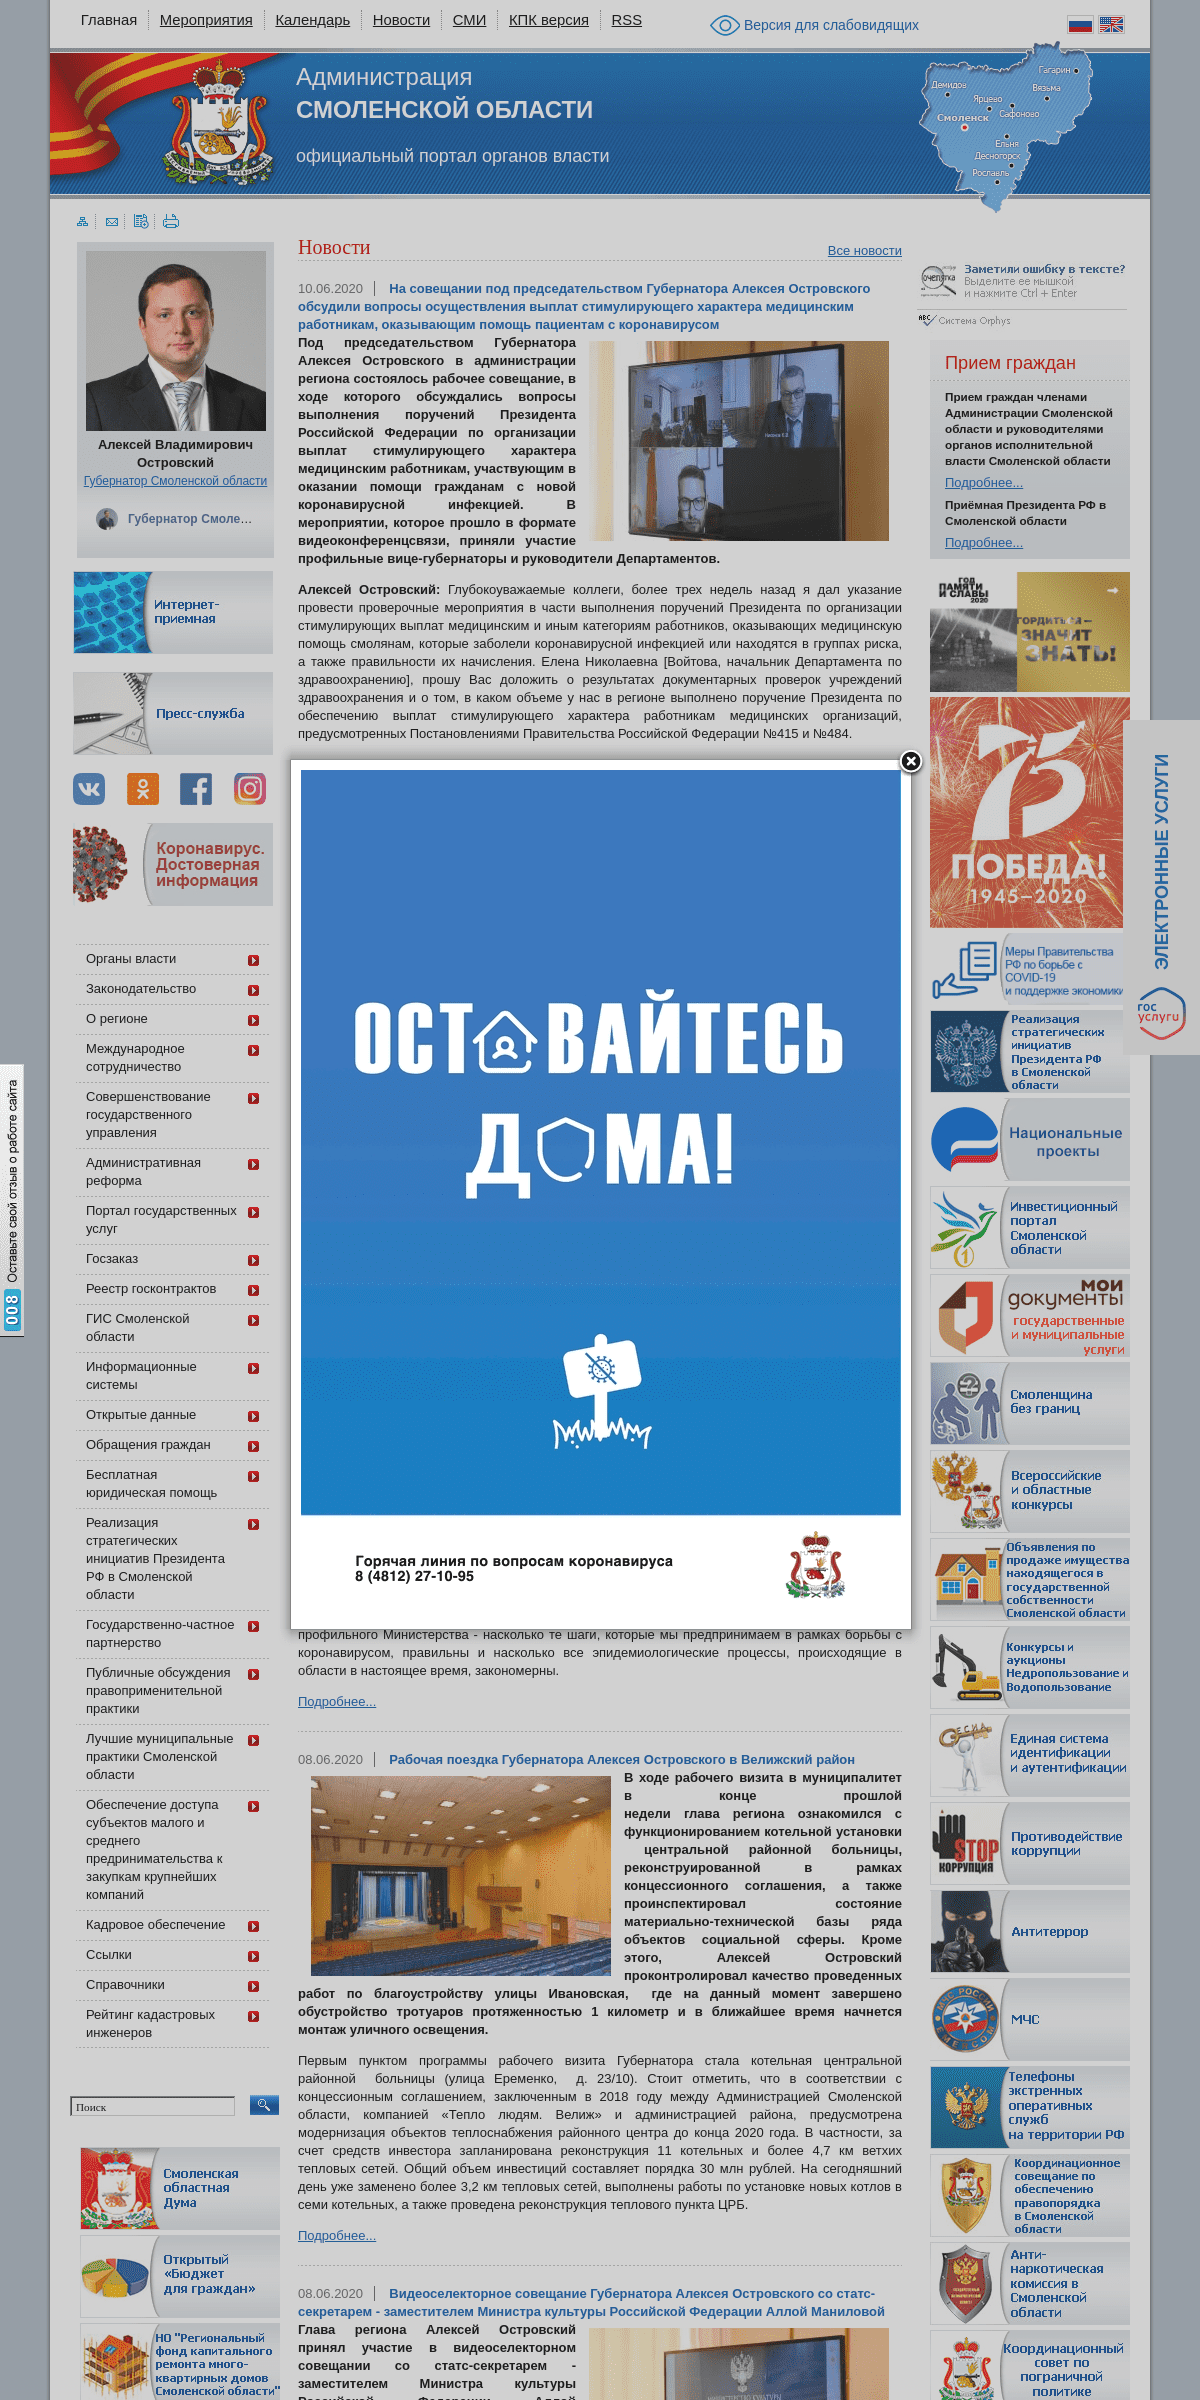 A complete backup of admin-smolensk.ru